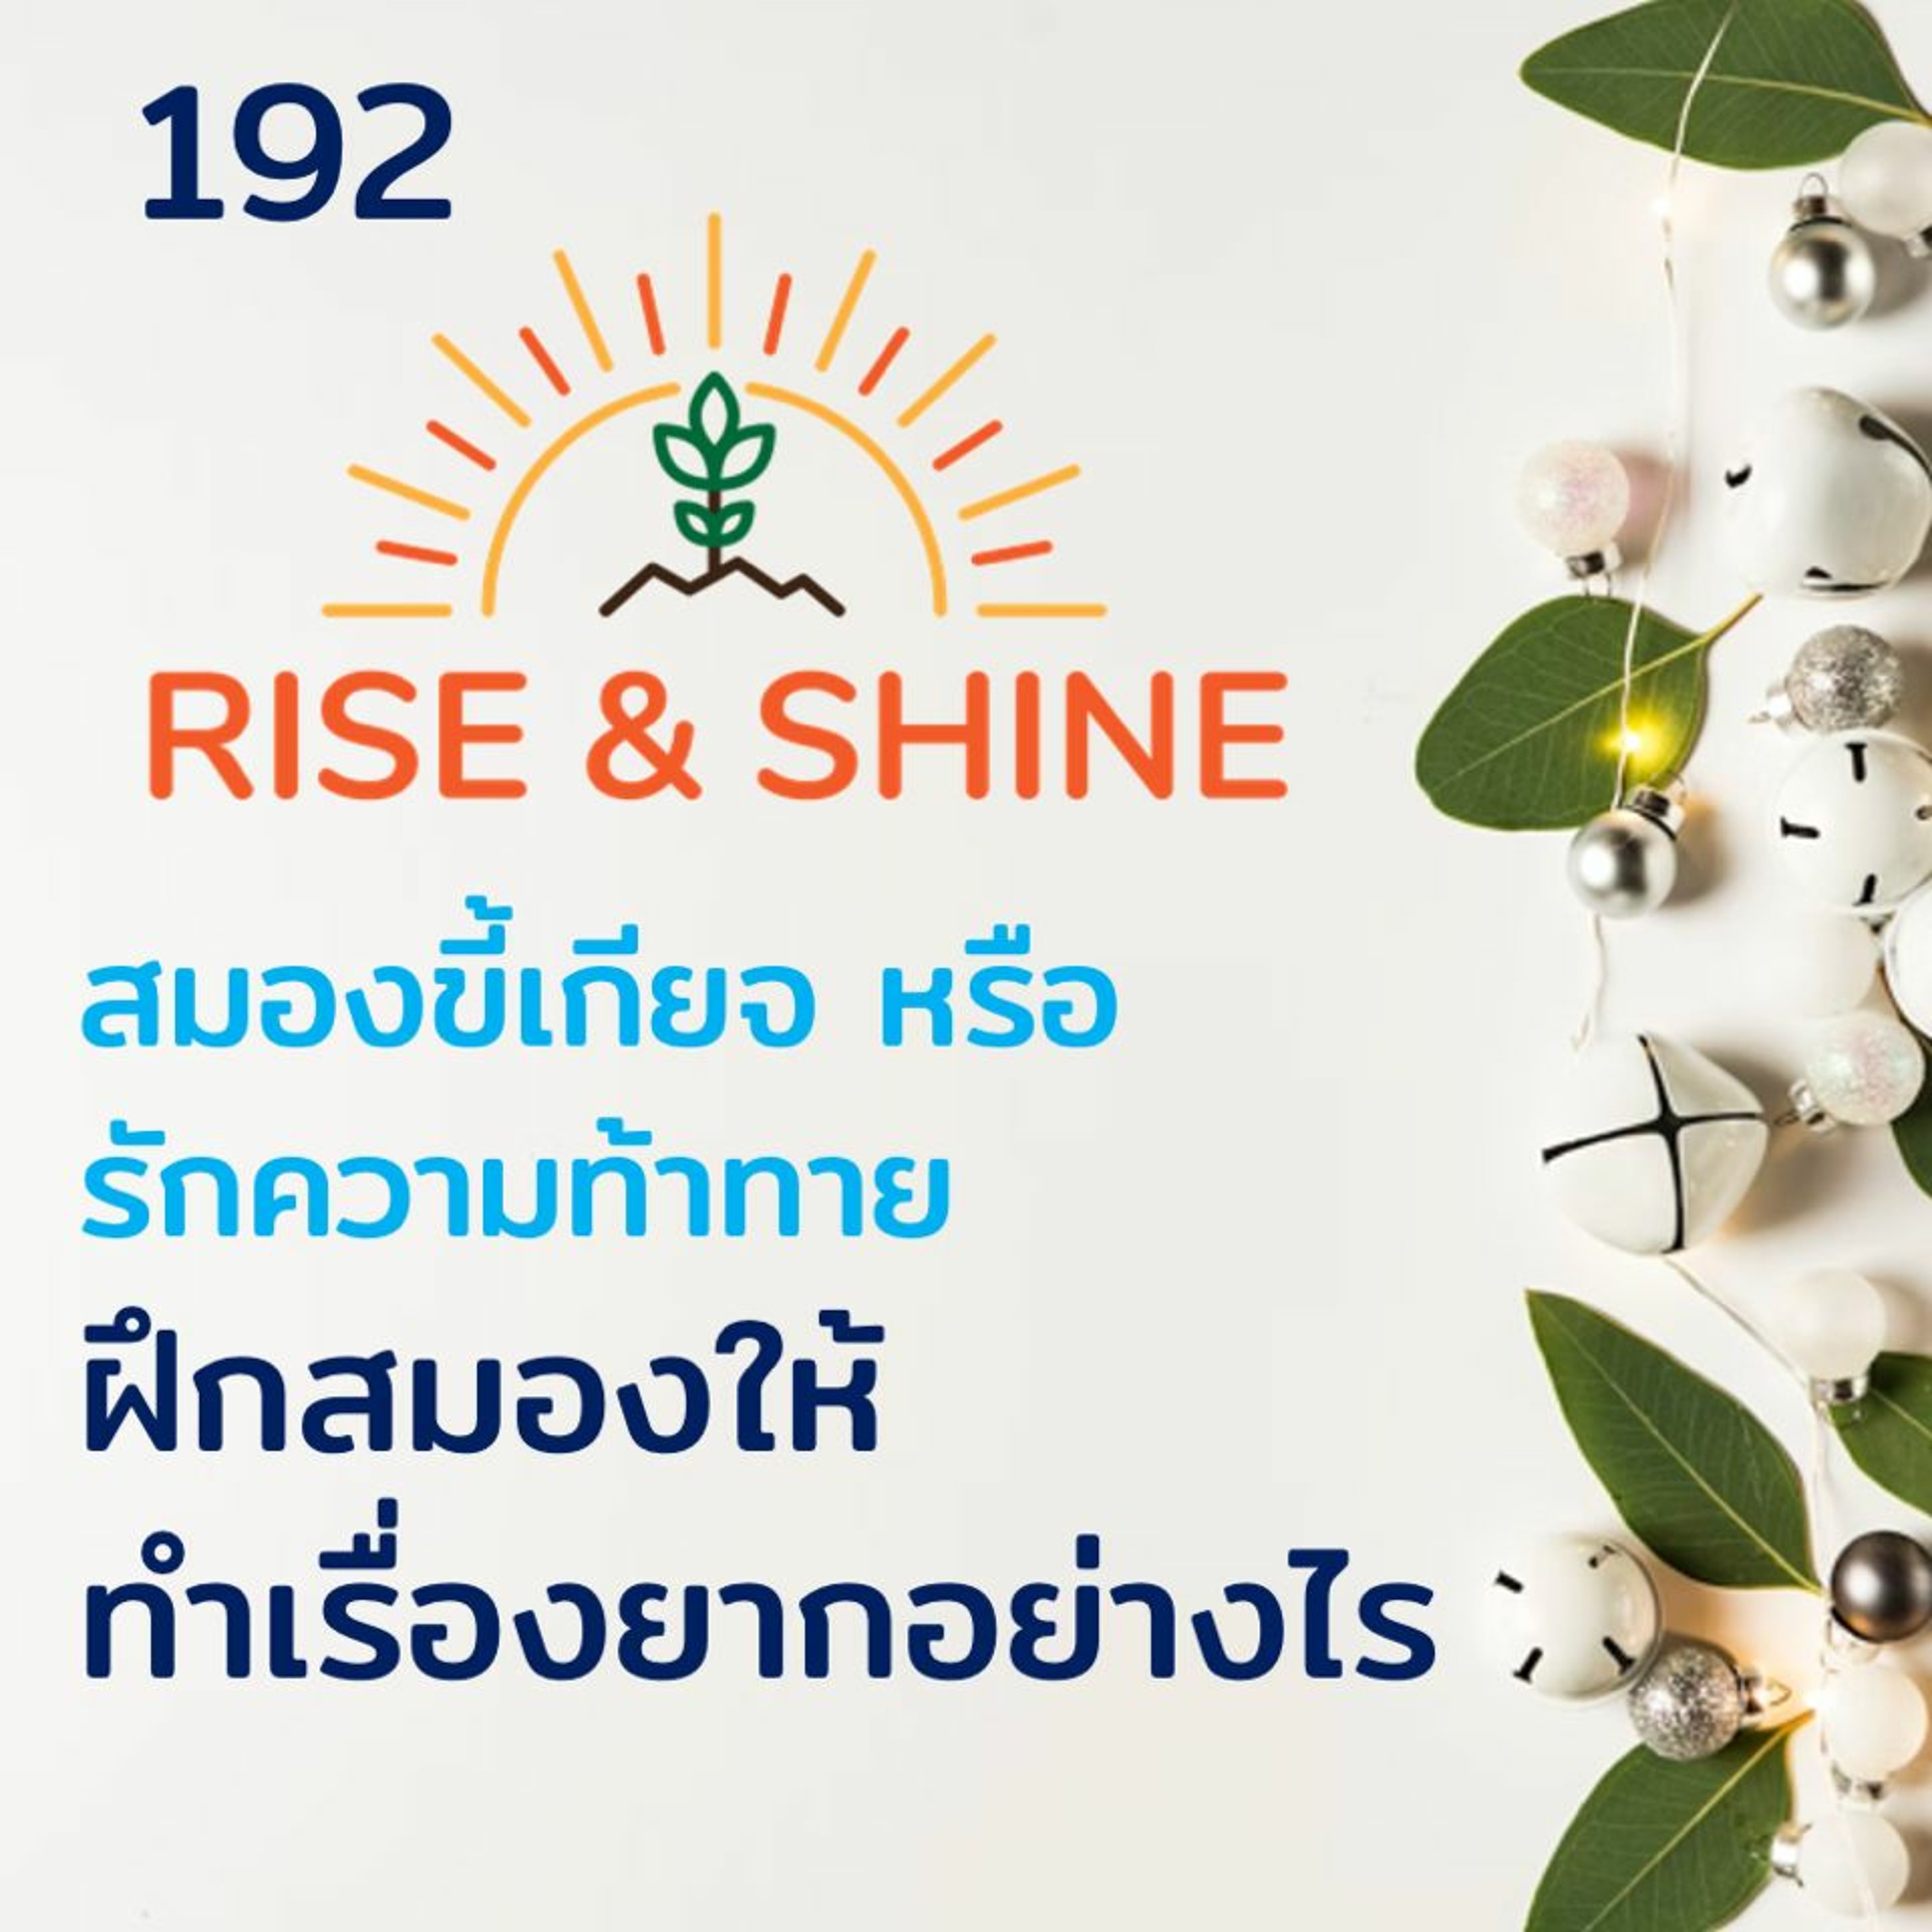 Rise & Shine 192 สมองขี้เกียจ หรือ รักความท้าท้าย ฝึกสมองให้ทำเรื่องยากอย่างไร